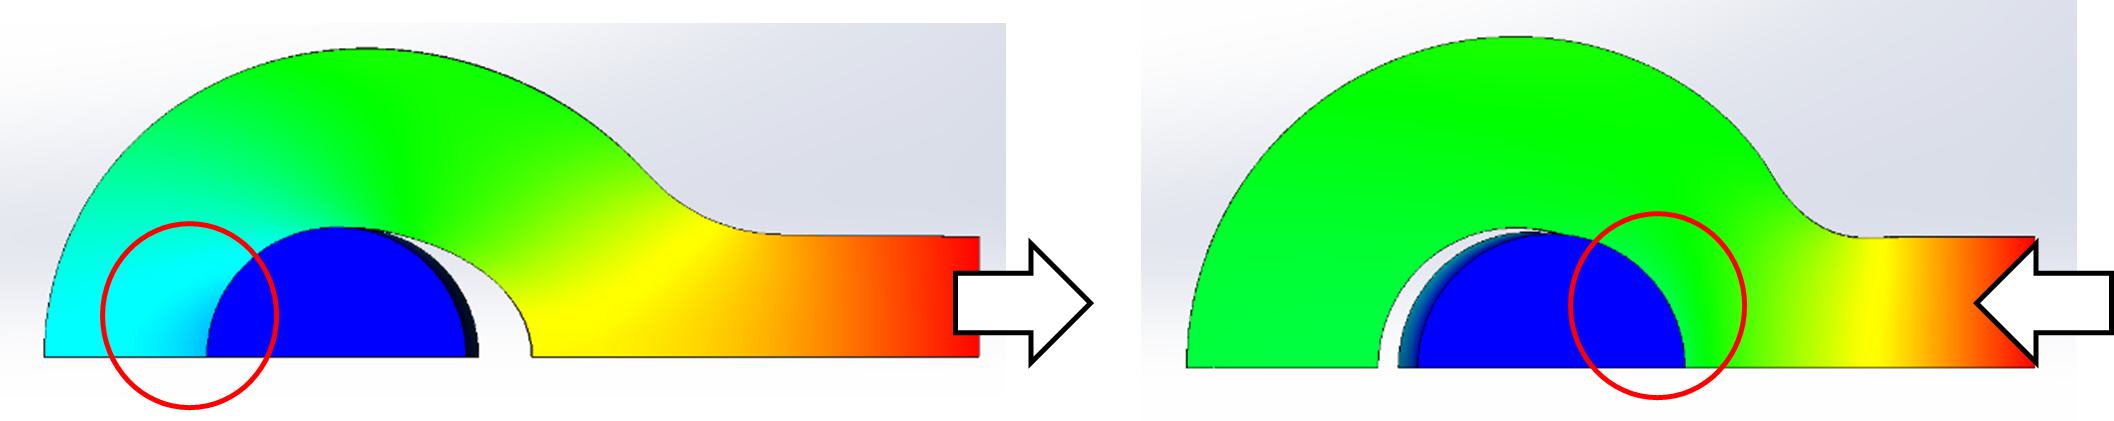 図：荷重量によって部品間の接触面積が変化する様子